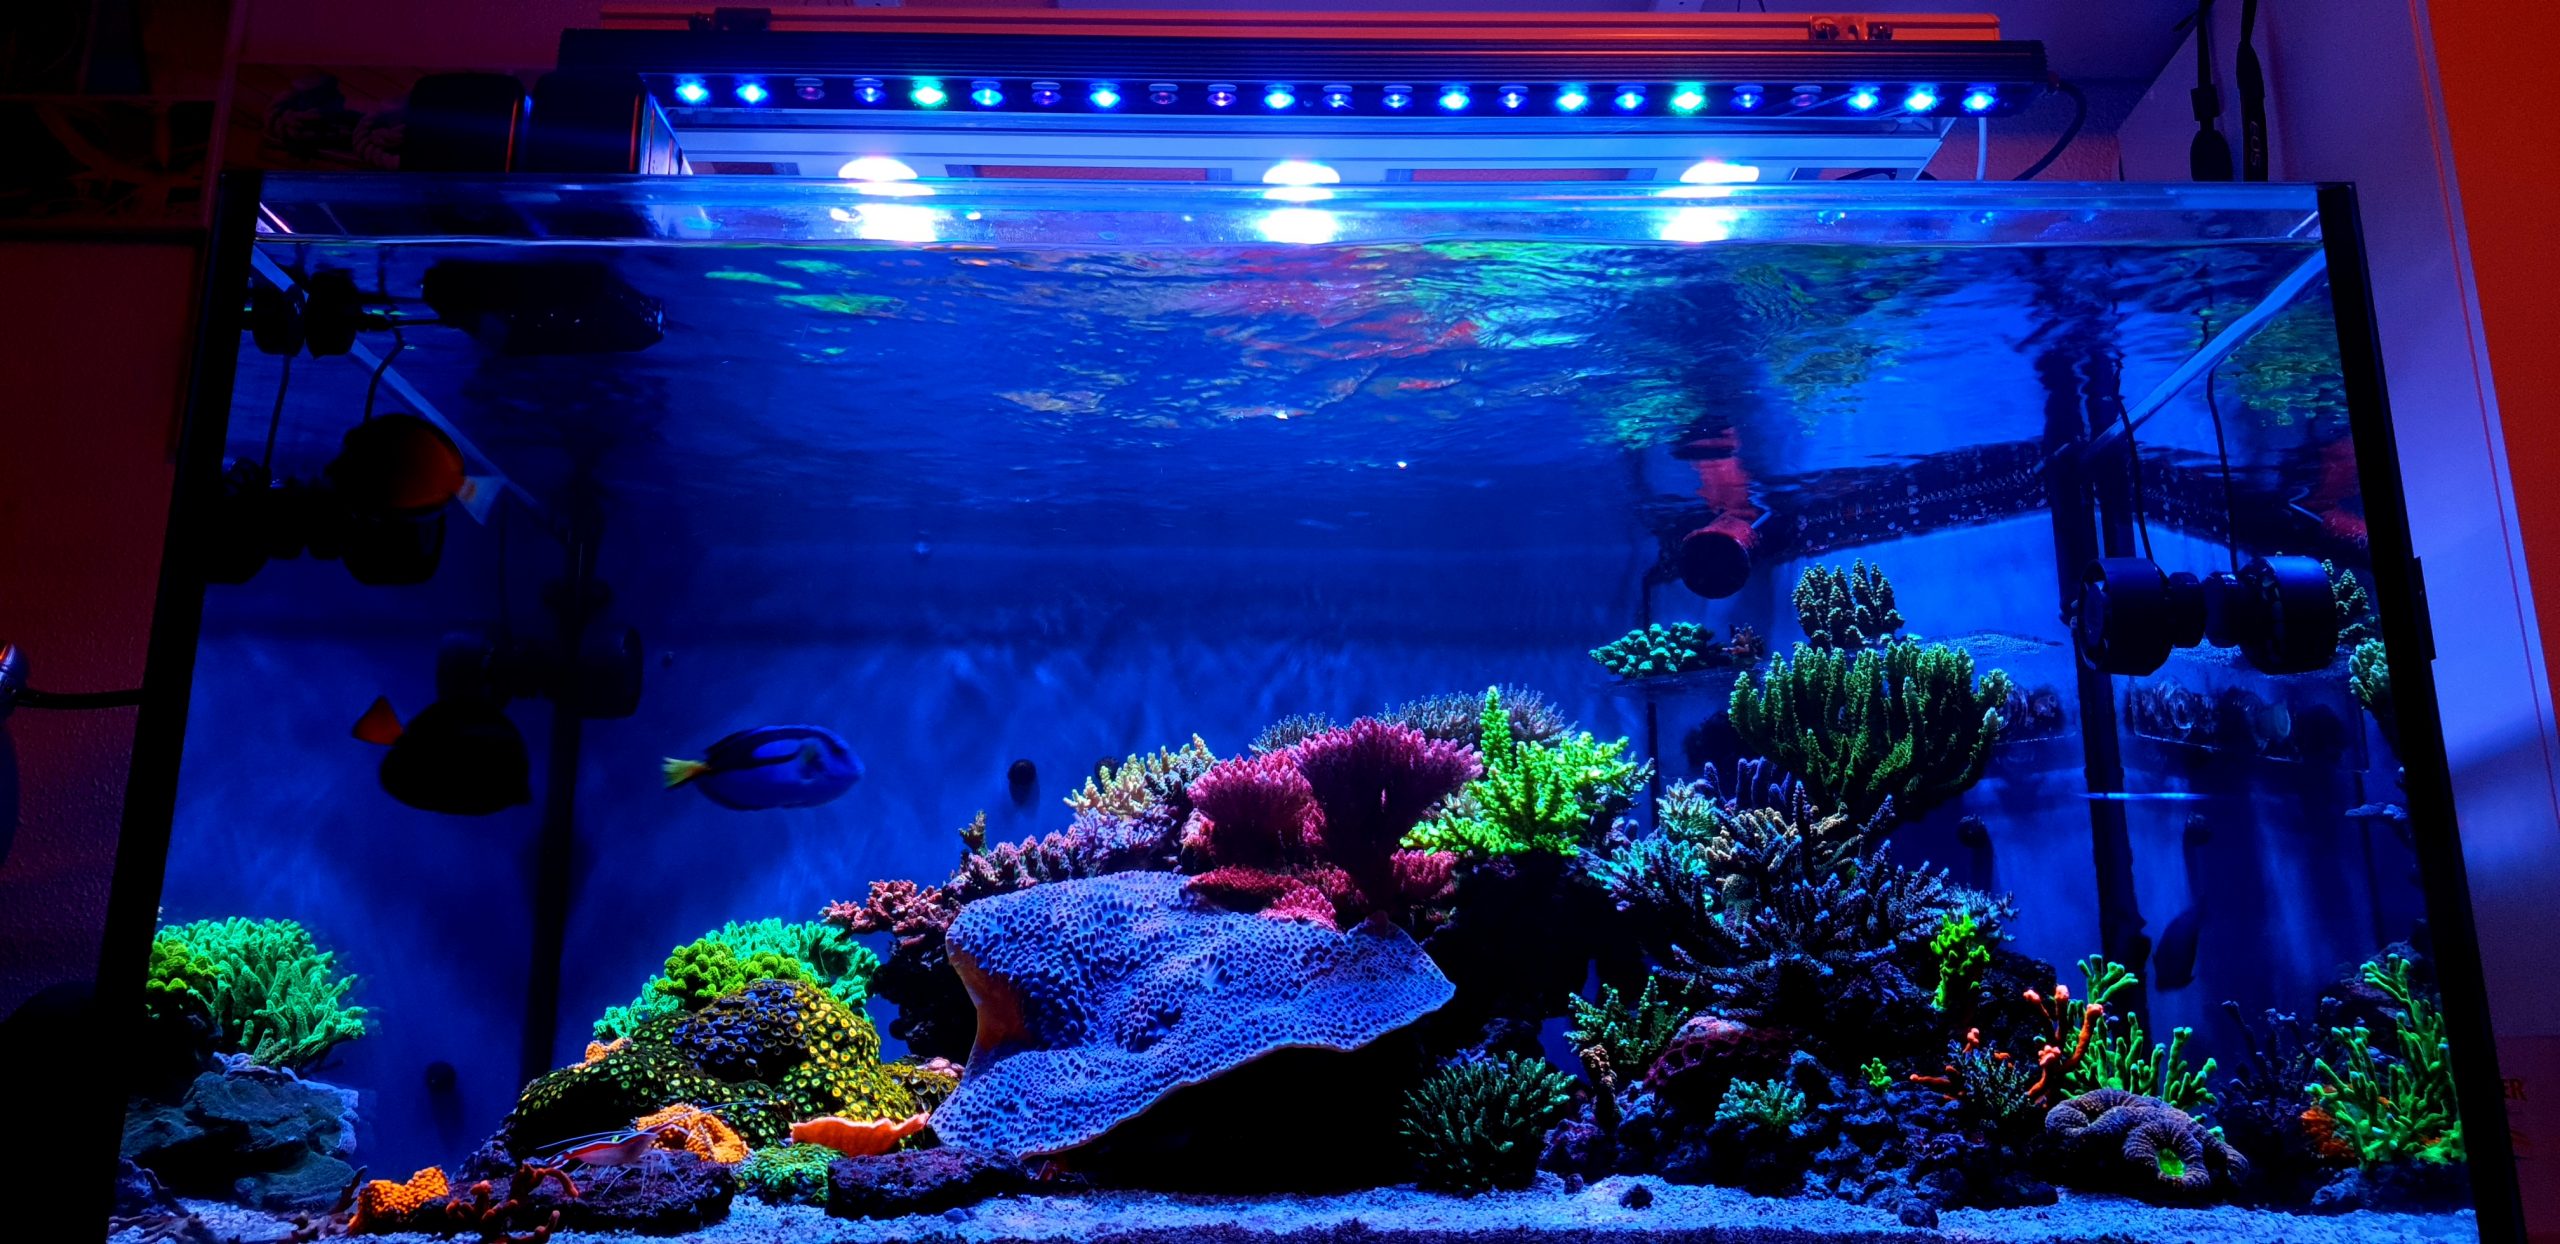 OR3 Blue Plus Reef Aquarium LED Showcase•Orphek